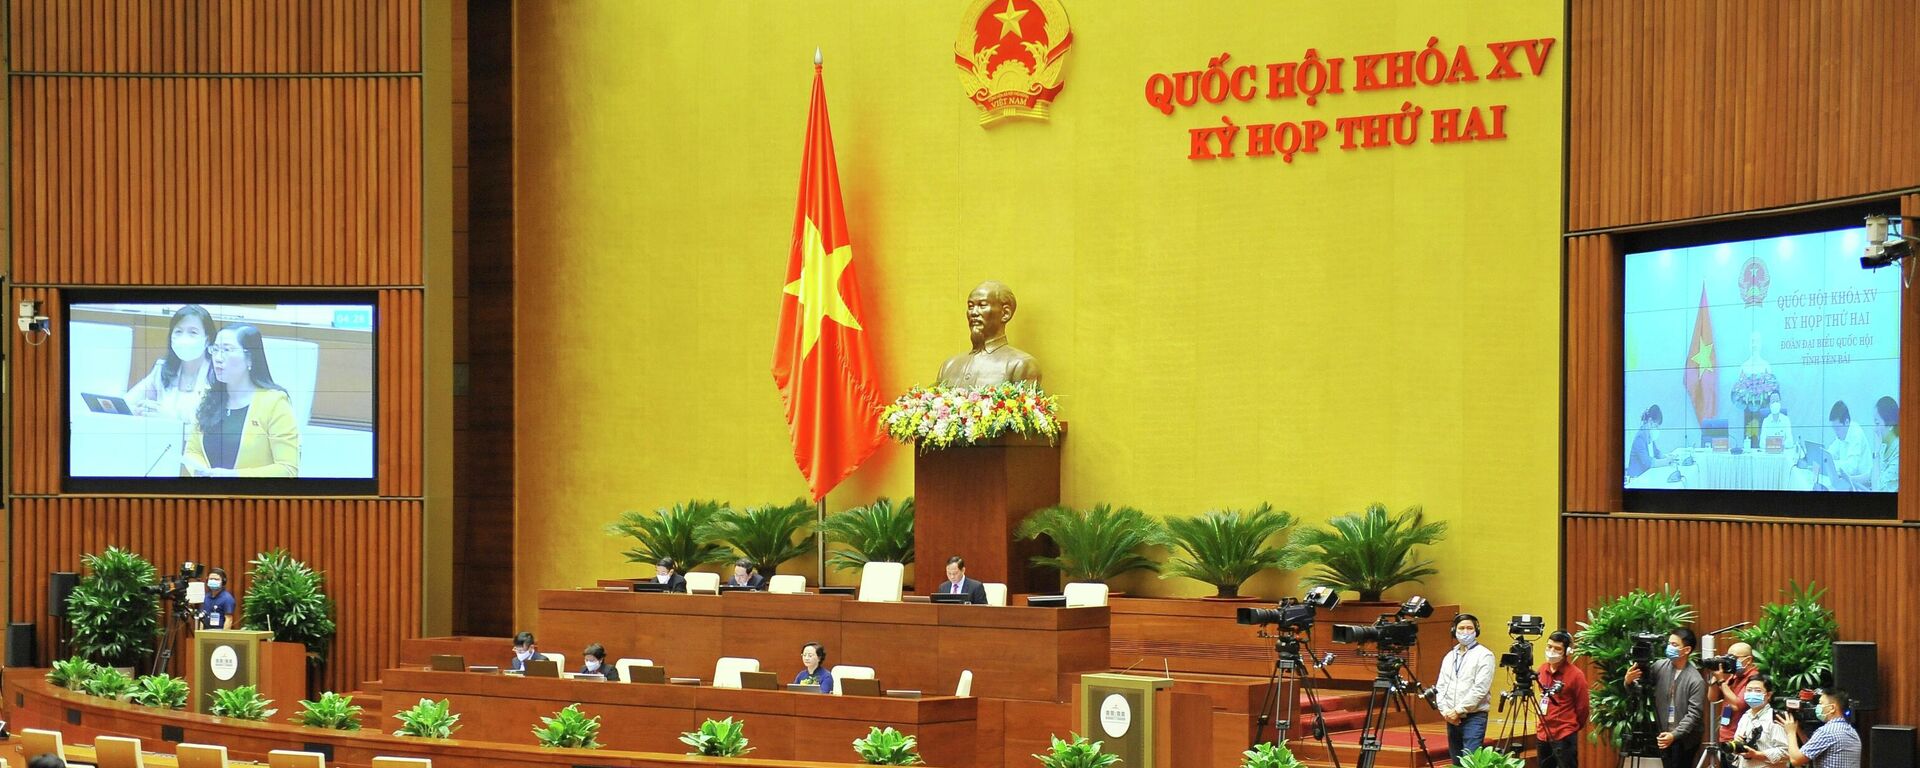 Kỳ họp thứ hai, Quốc hội khóa XV: Quốc hội thảo luận về dự án Luật Thi đua, khen thưởng (sửa đổi) - Sputnik Việt Nam, 1920, 28.10.2021